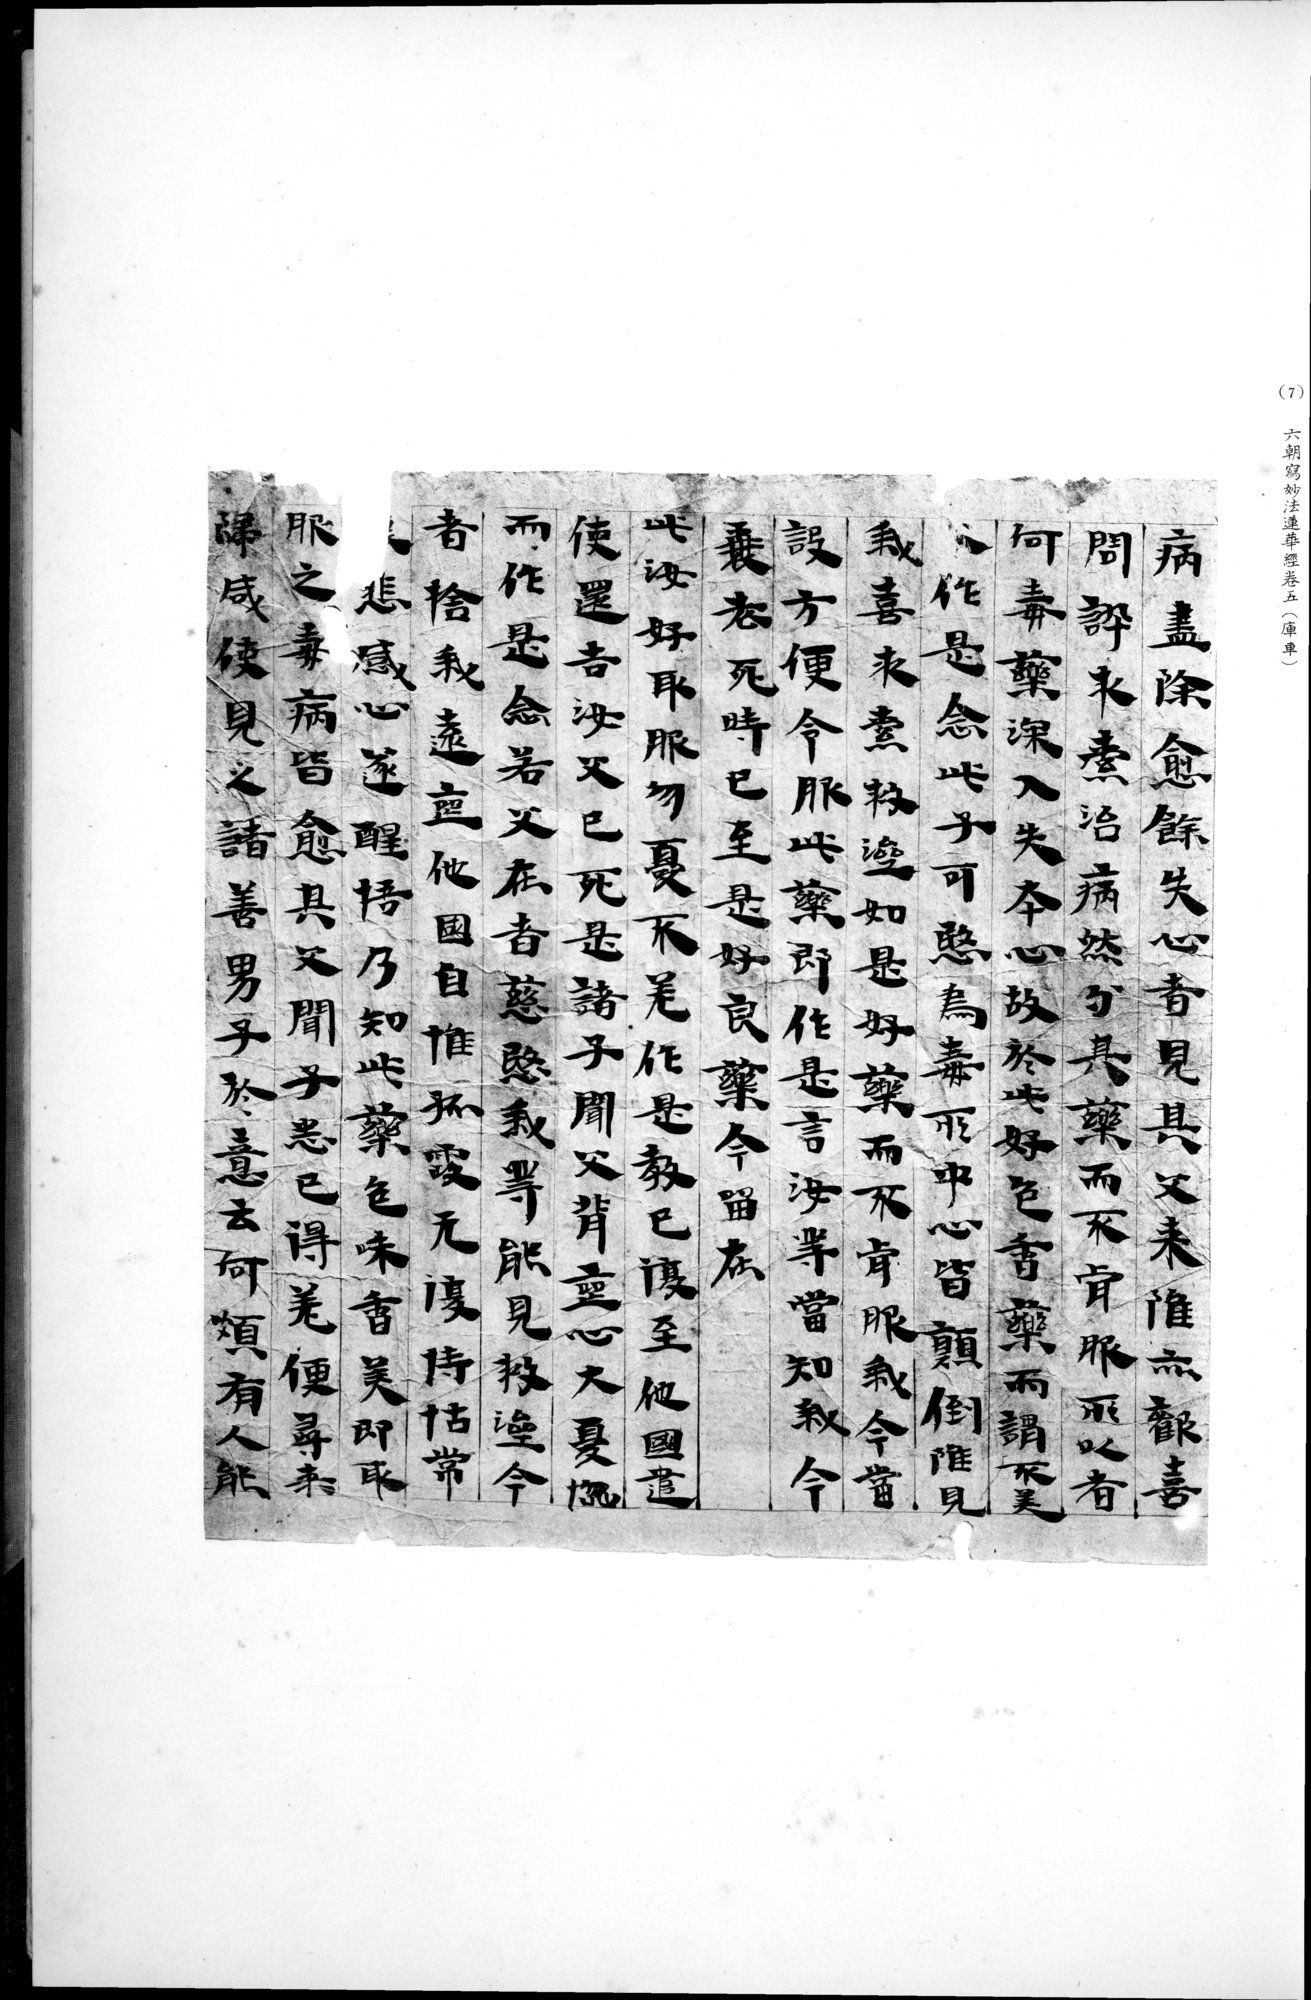 西域考古図譜 : vol.2 / 29 ページ（白黒高解像度画像）